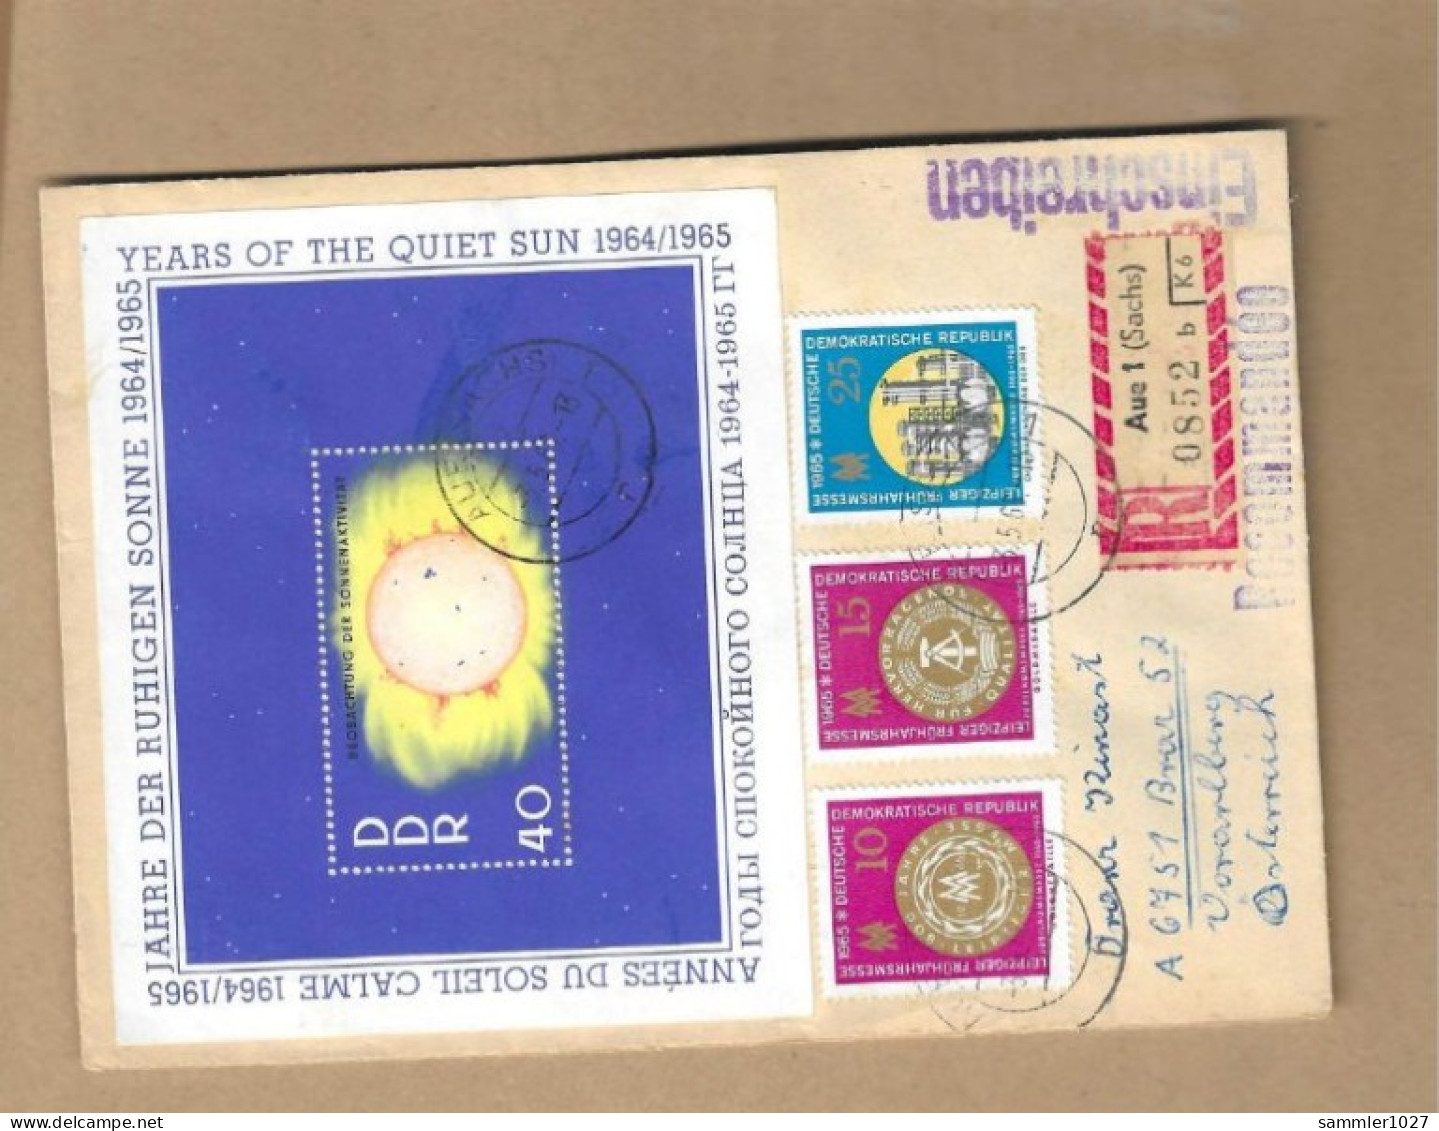 Los Vom 17.05 - Einschreiben-Briefumschlag Aus Aue 1966 - Covers & Documents